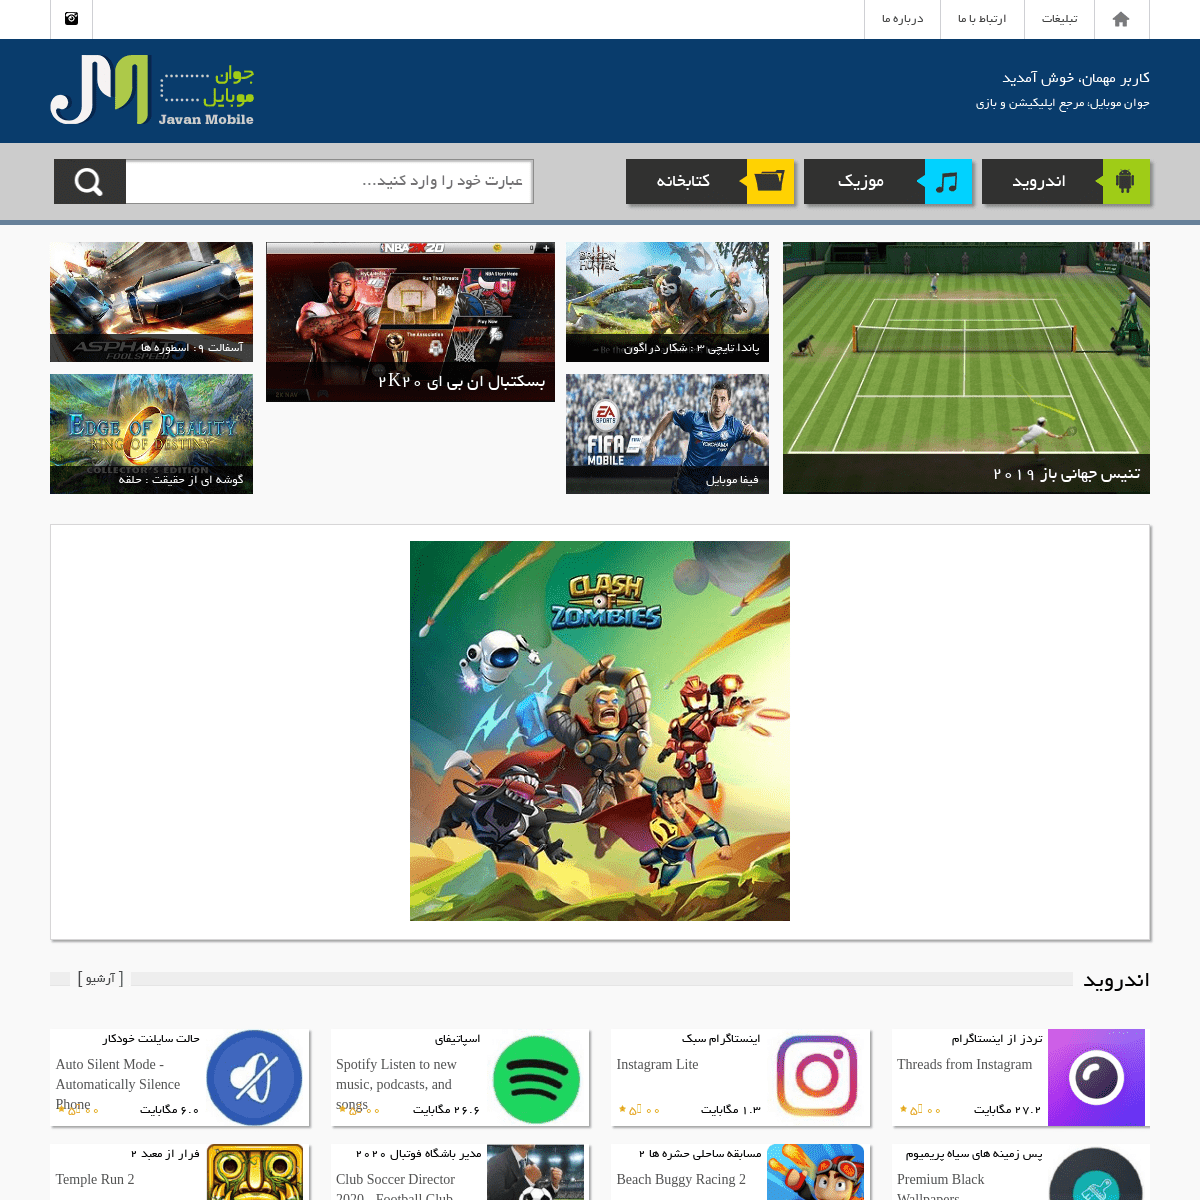 A complete backup of javanmobile.com